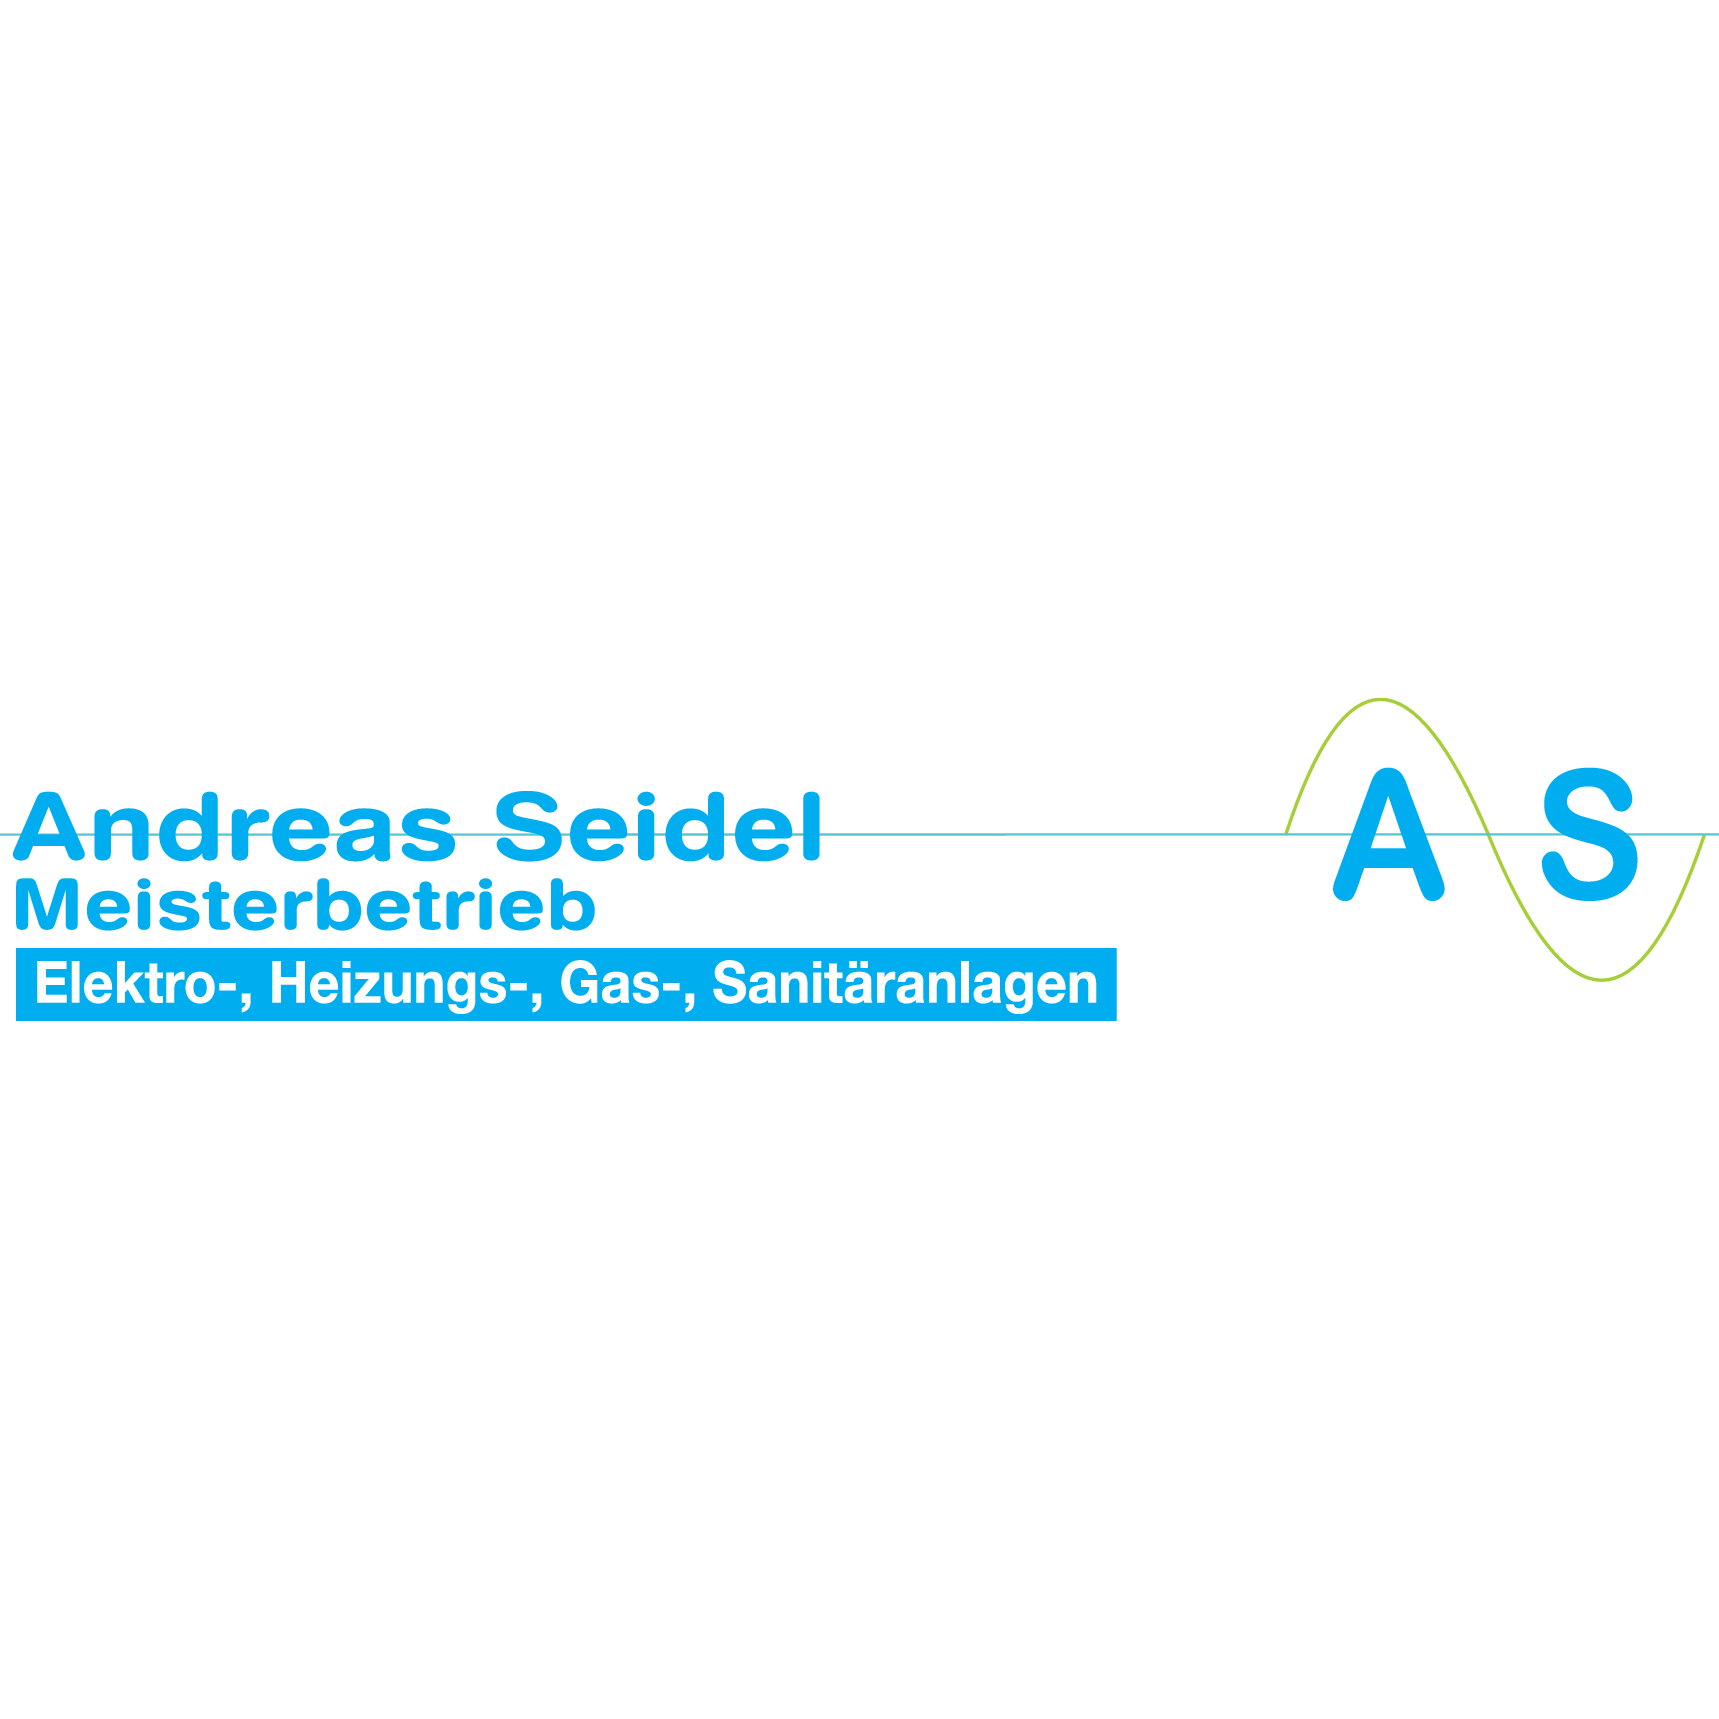 Seidel, Andreas